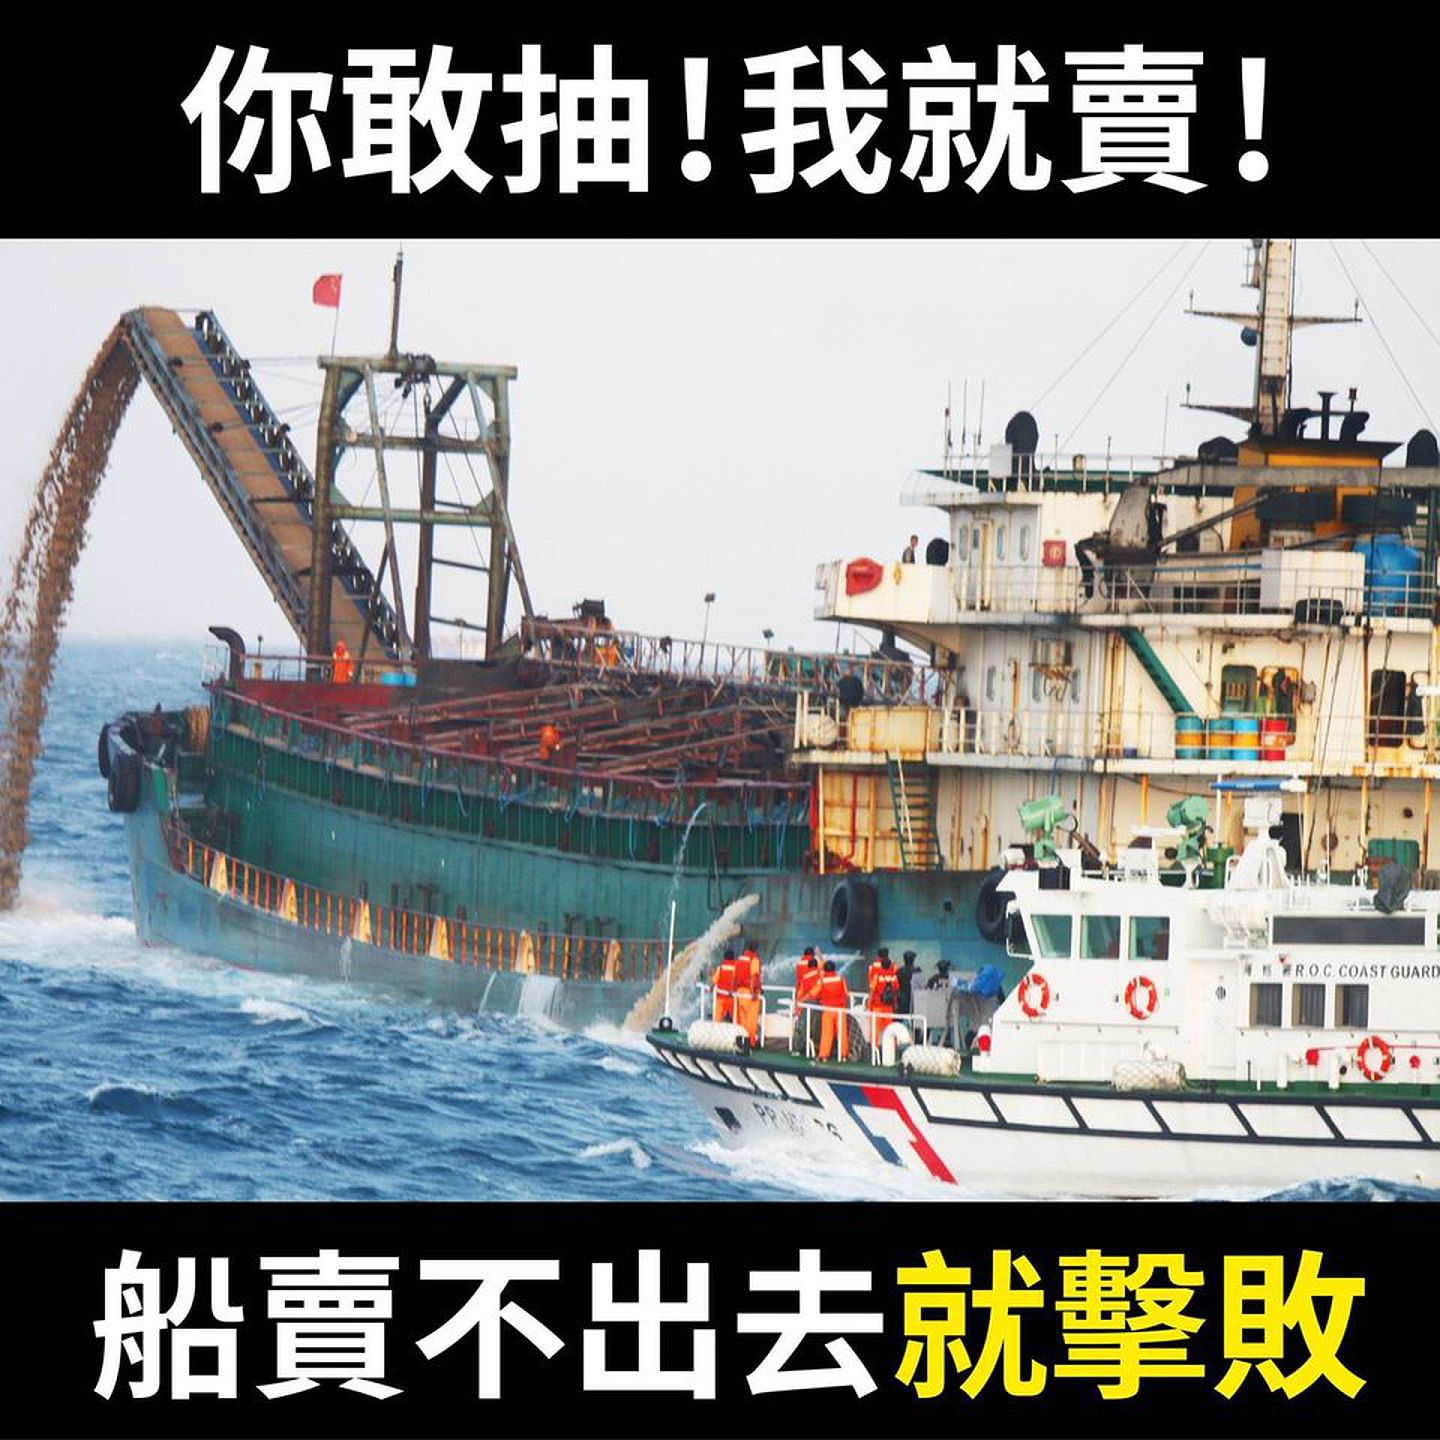 台湾海洋委员会7月29日曾在脸书（Facebook）上统计，自2020年1月至7月底止，海巡舰艇已驱离中国大陆抽砂船共2,988艘，数量远超于2017年所驱离的2艘、2018年的71艘、2019年的600艘。海委会并宣告，“你敢抽，我就卖！船卖不出去就击败，做成军方靶或击沉当鱼礁！”（Facebook@海洋委员会）